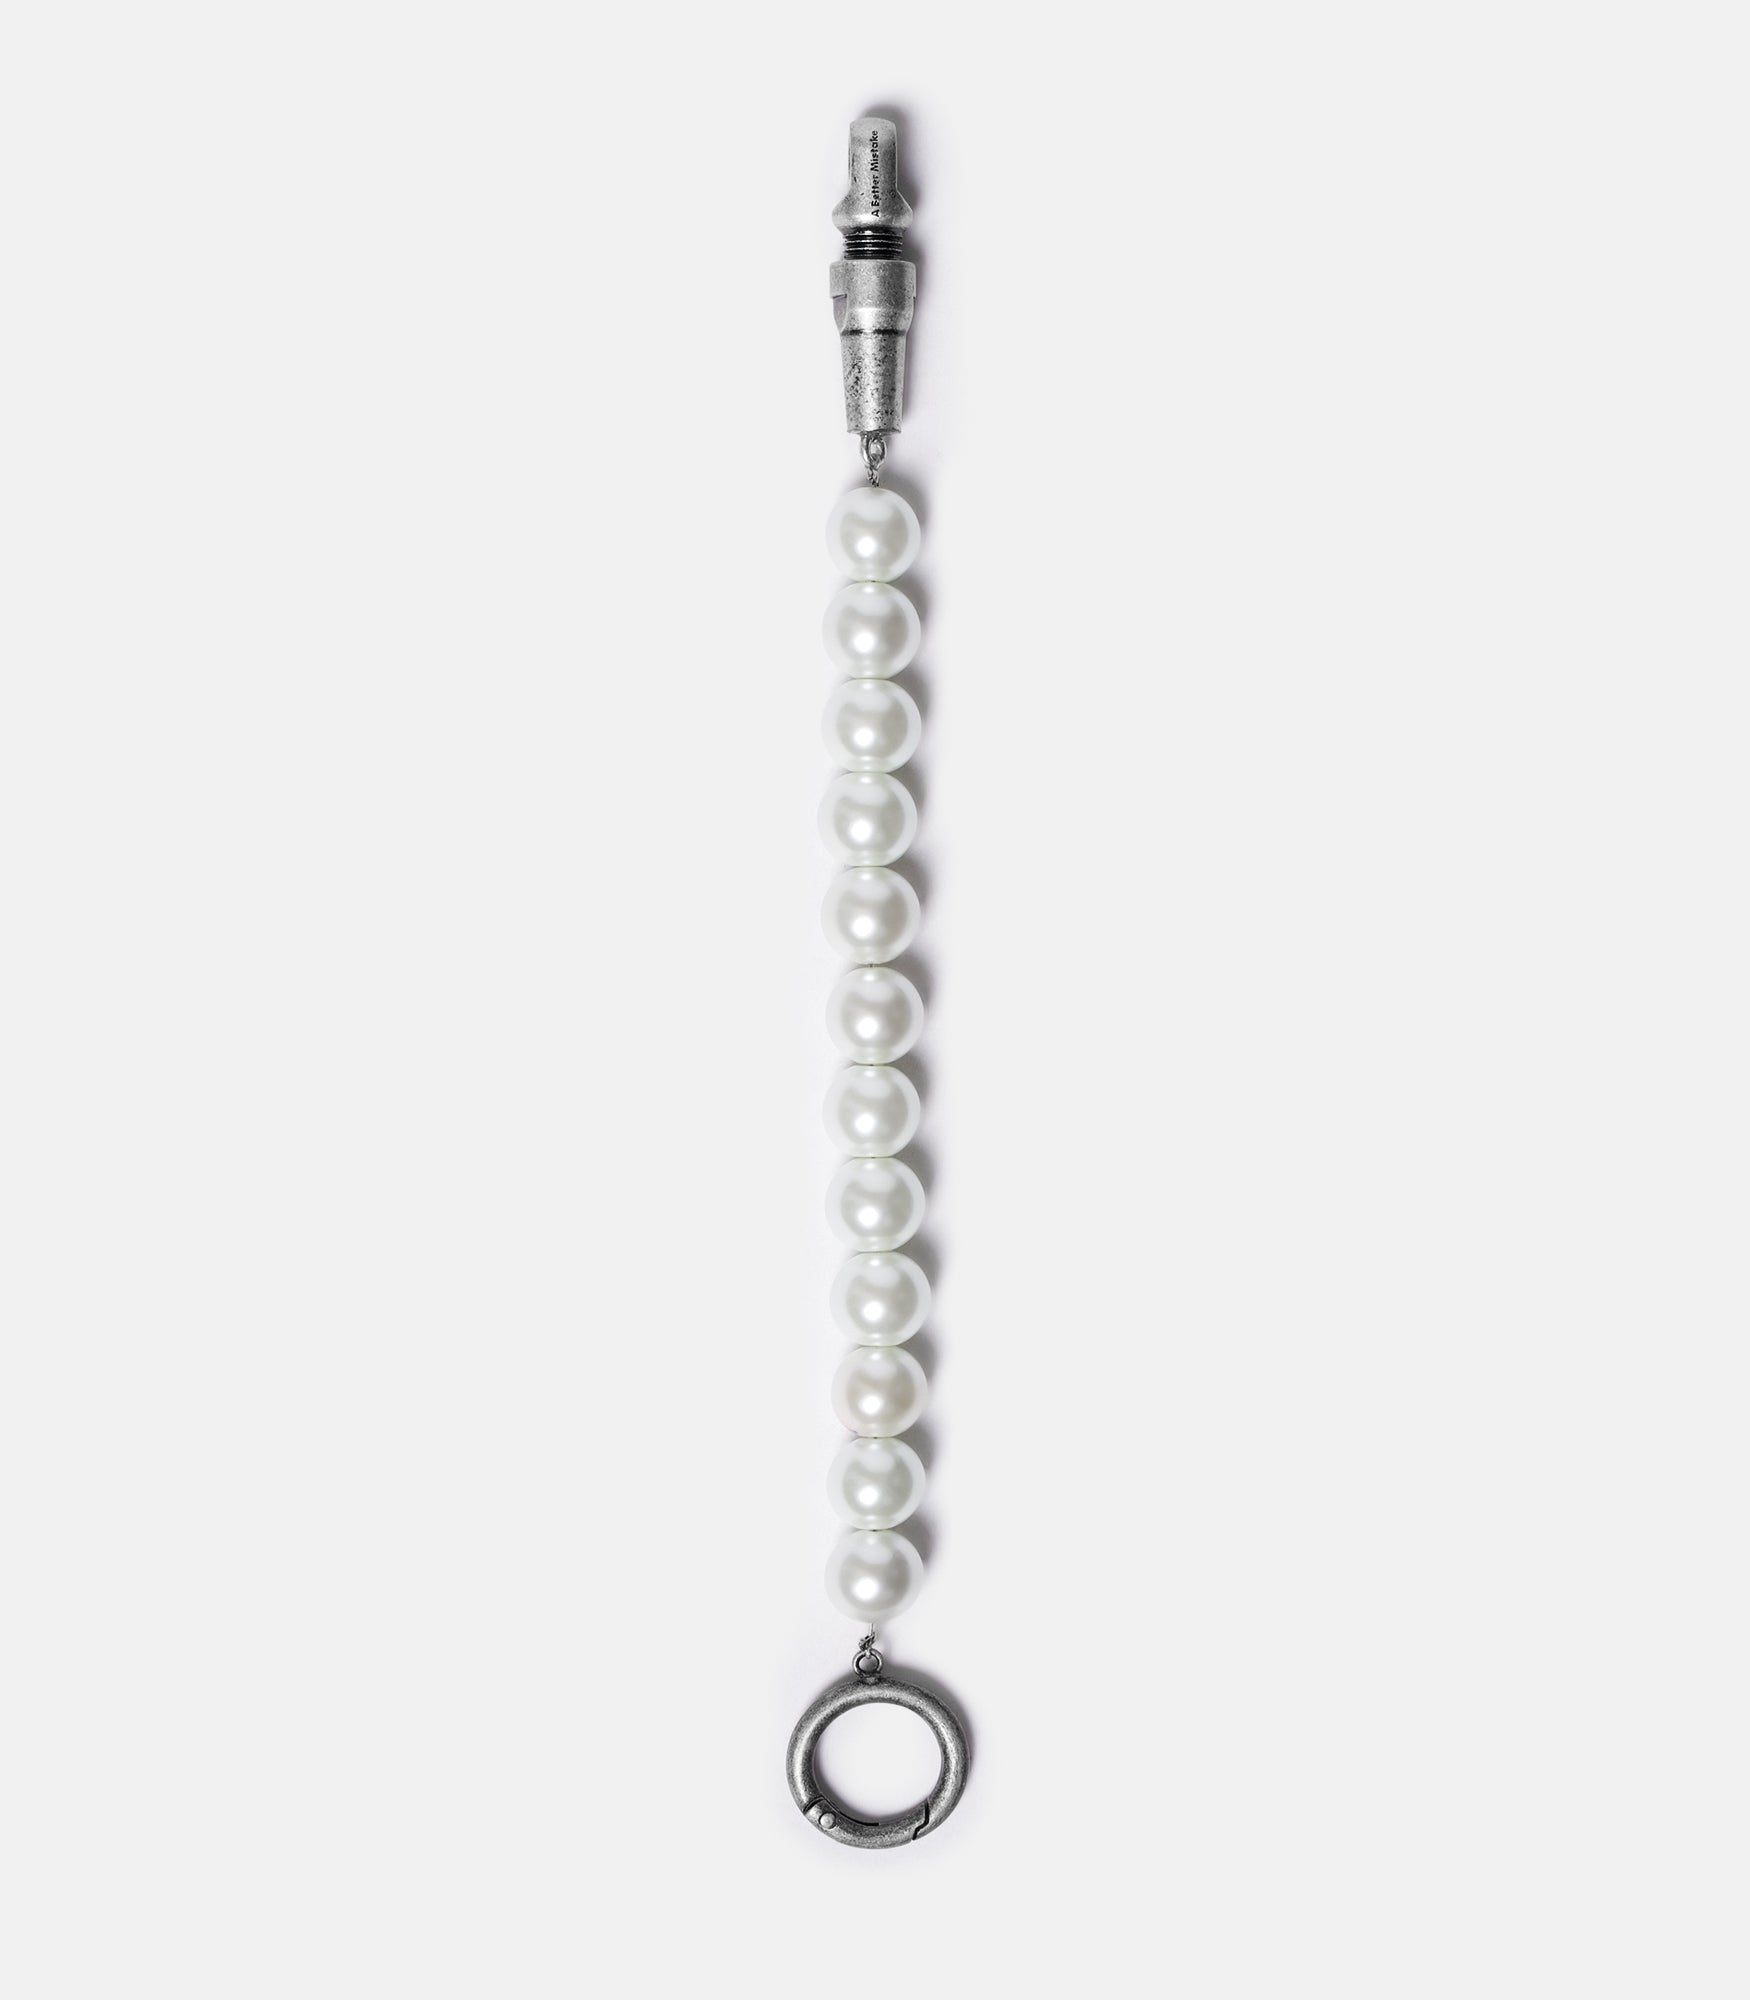 Modular Pearl Bracelet